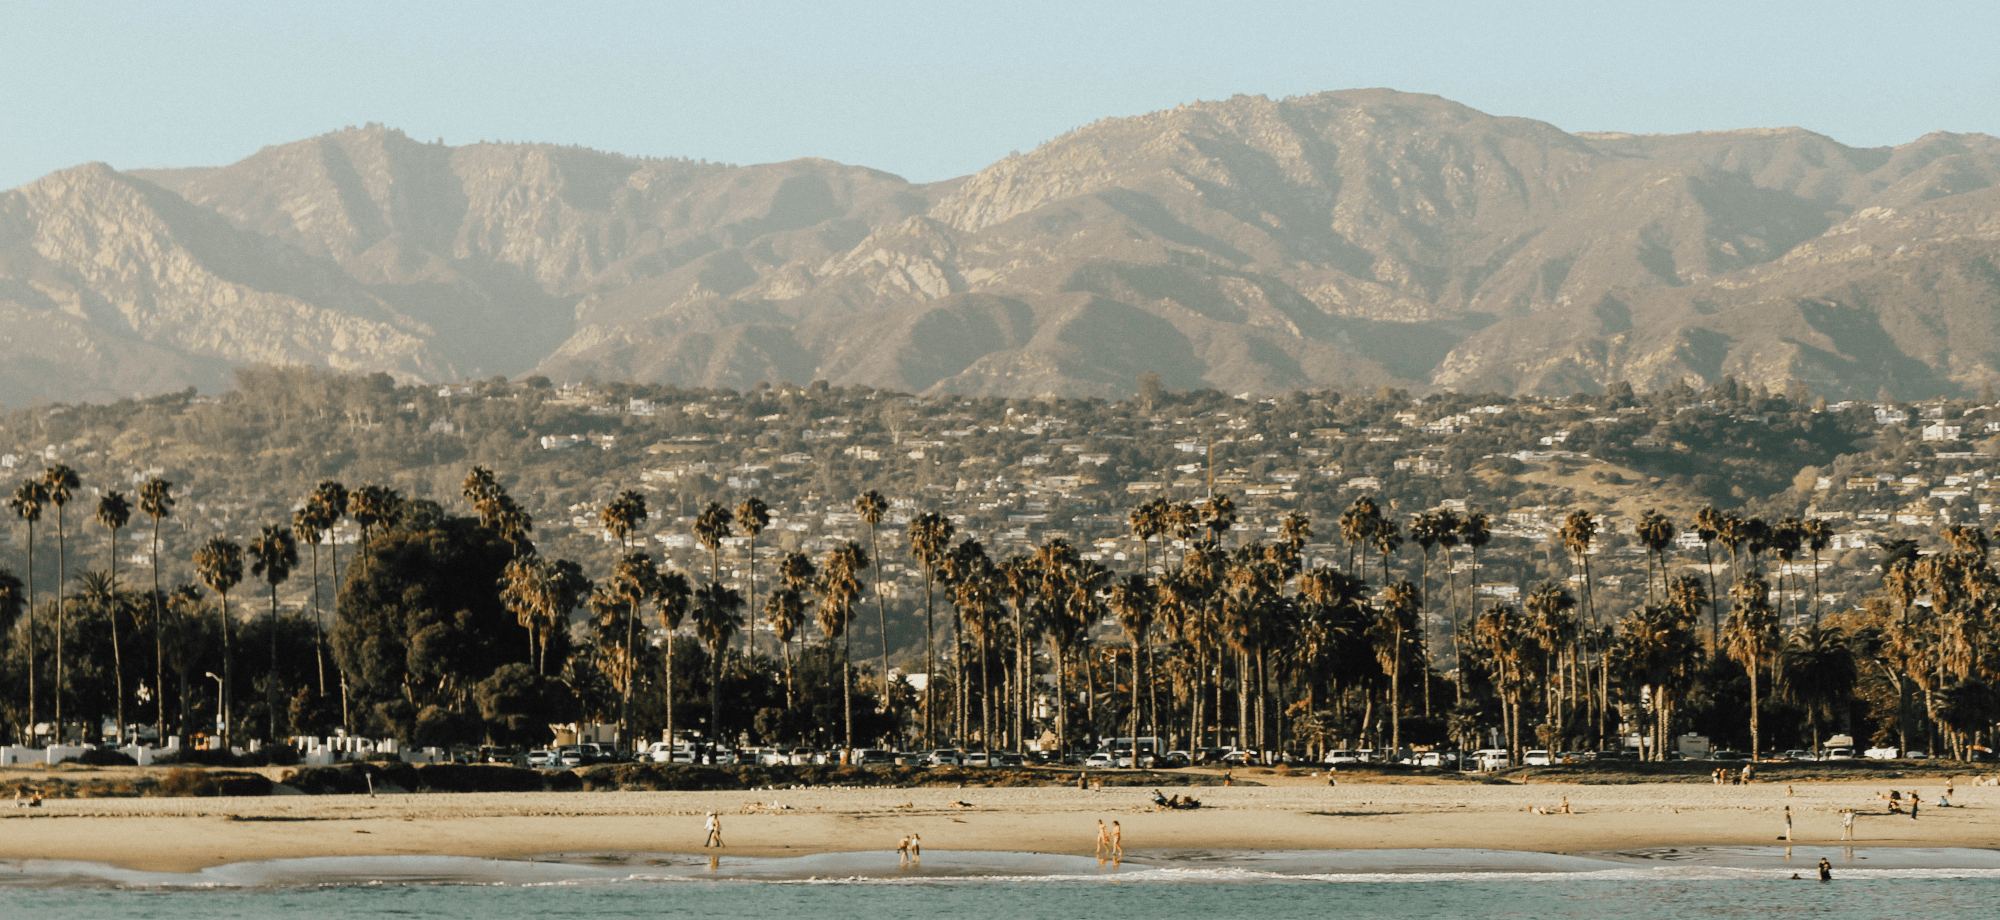 Santa Barbara (Beach & Mountains)